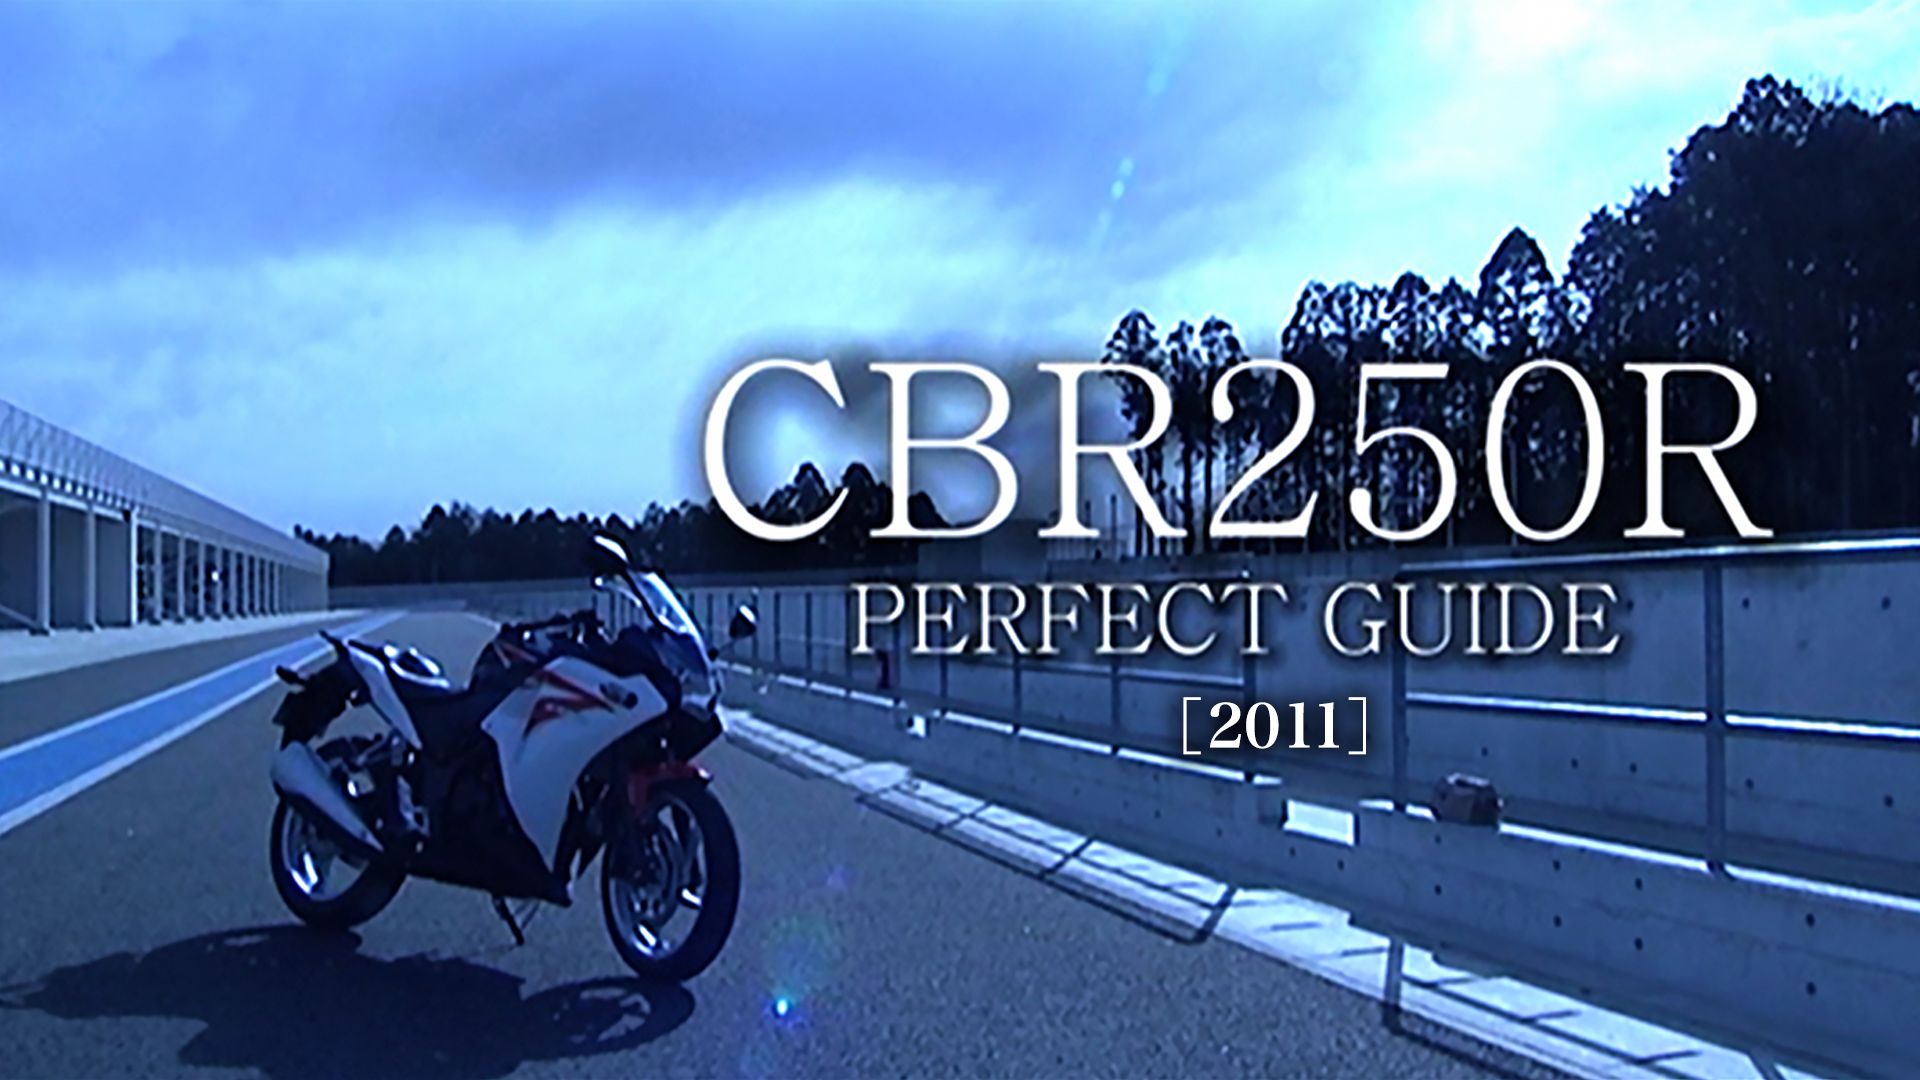 CBR250R PERFECT GUIDE